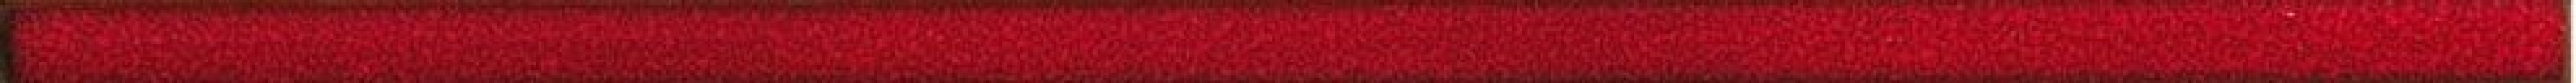 Бордюр Rako Fashion красный 2x60 DDRSN971